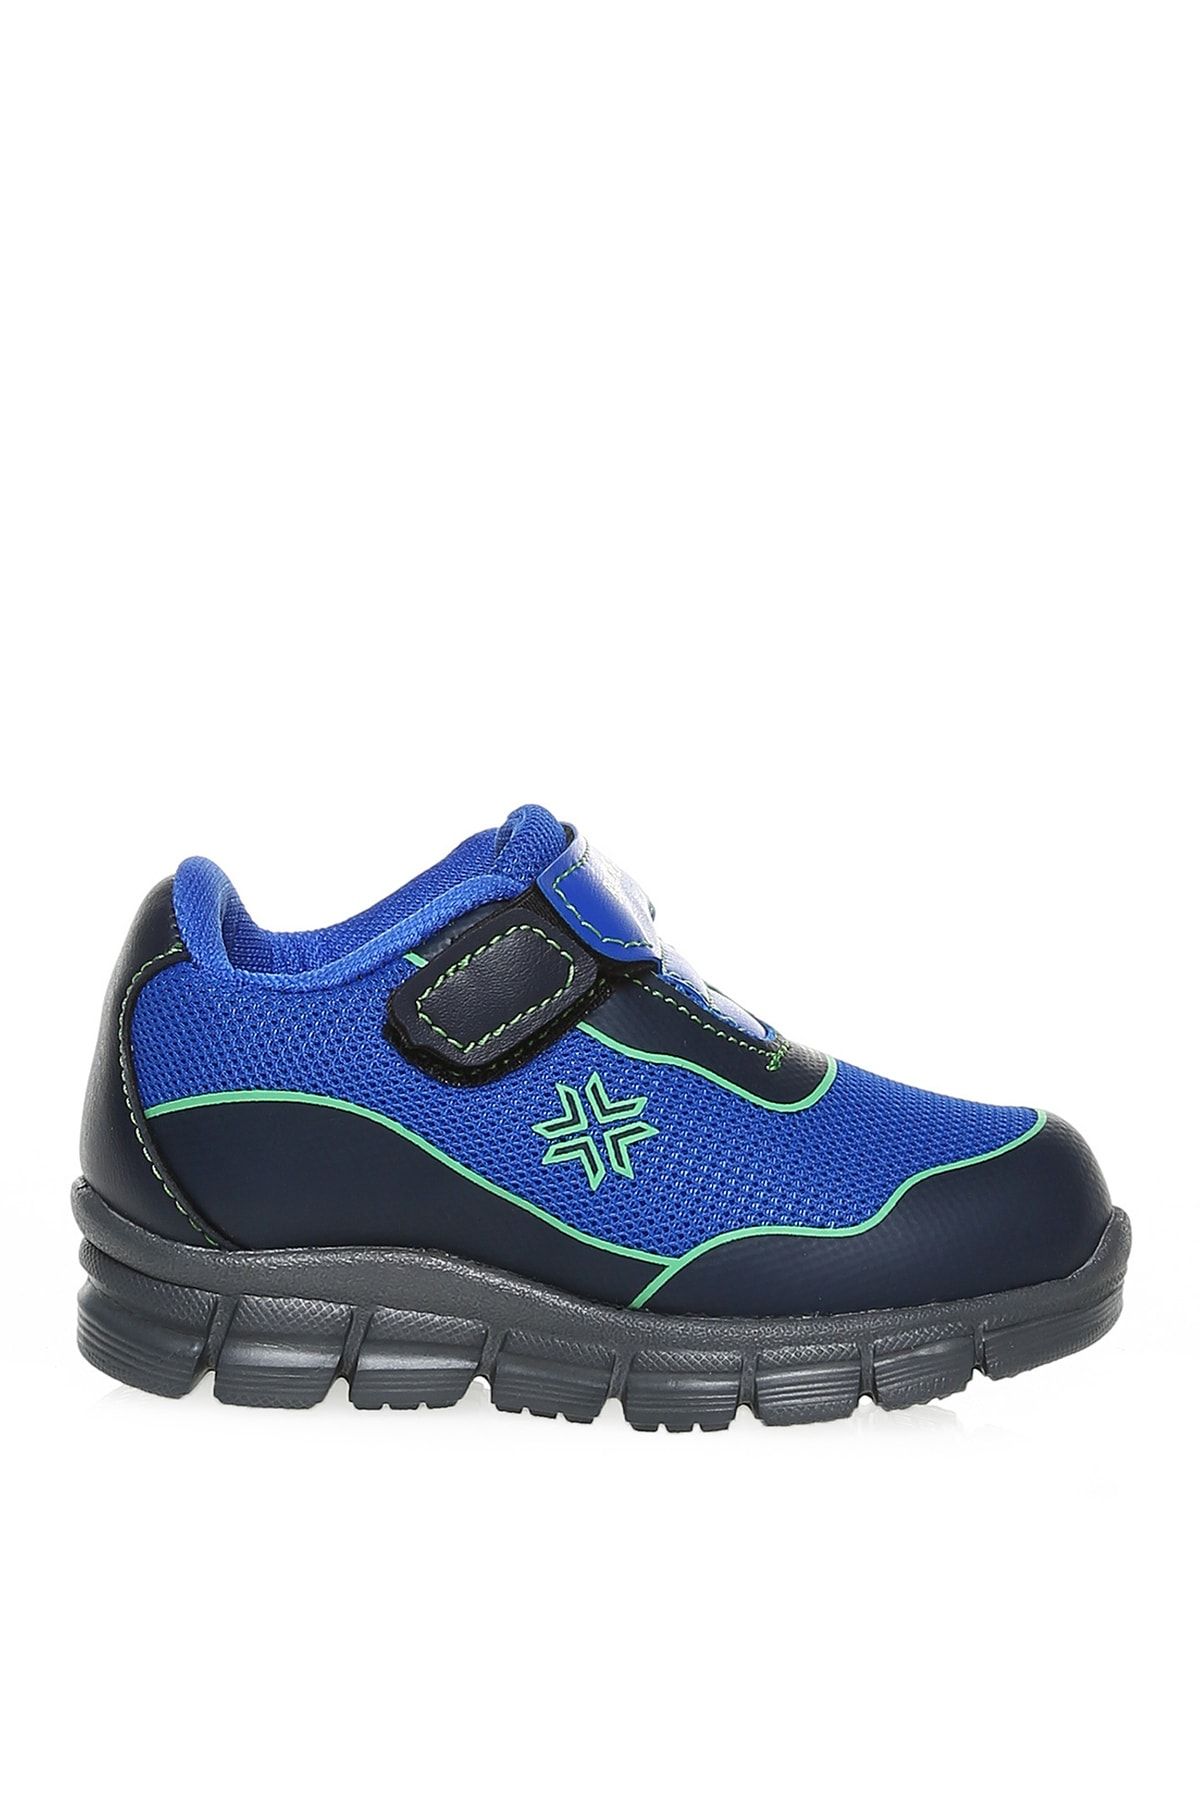 BUCKHEAD Mavi - Yeşil Bebek Sneaker Buck4179 Neo